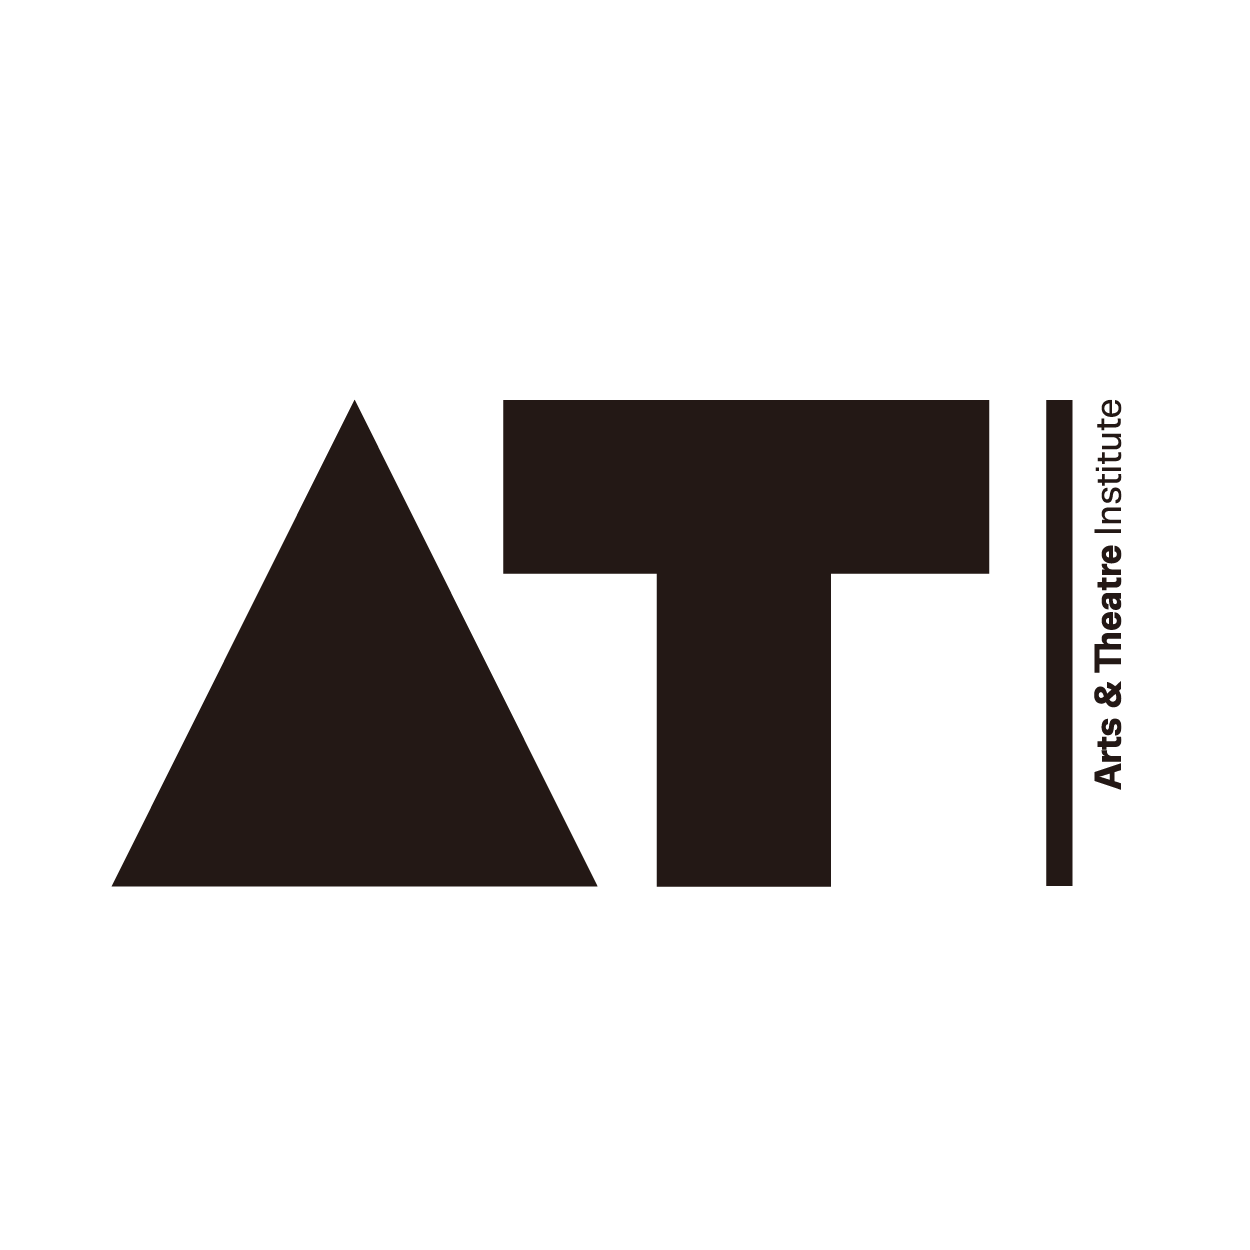 Prague Arts and Theatre Institute (ATI)